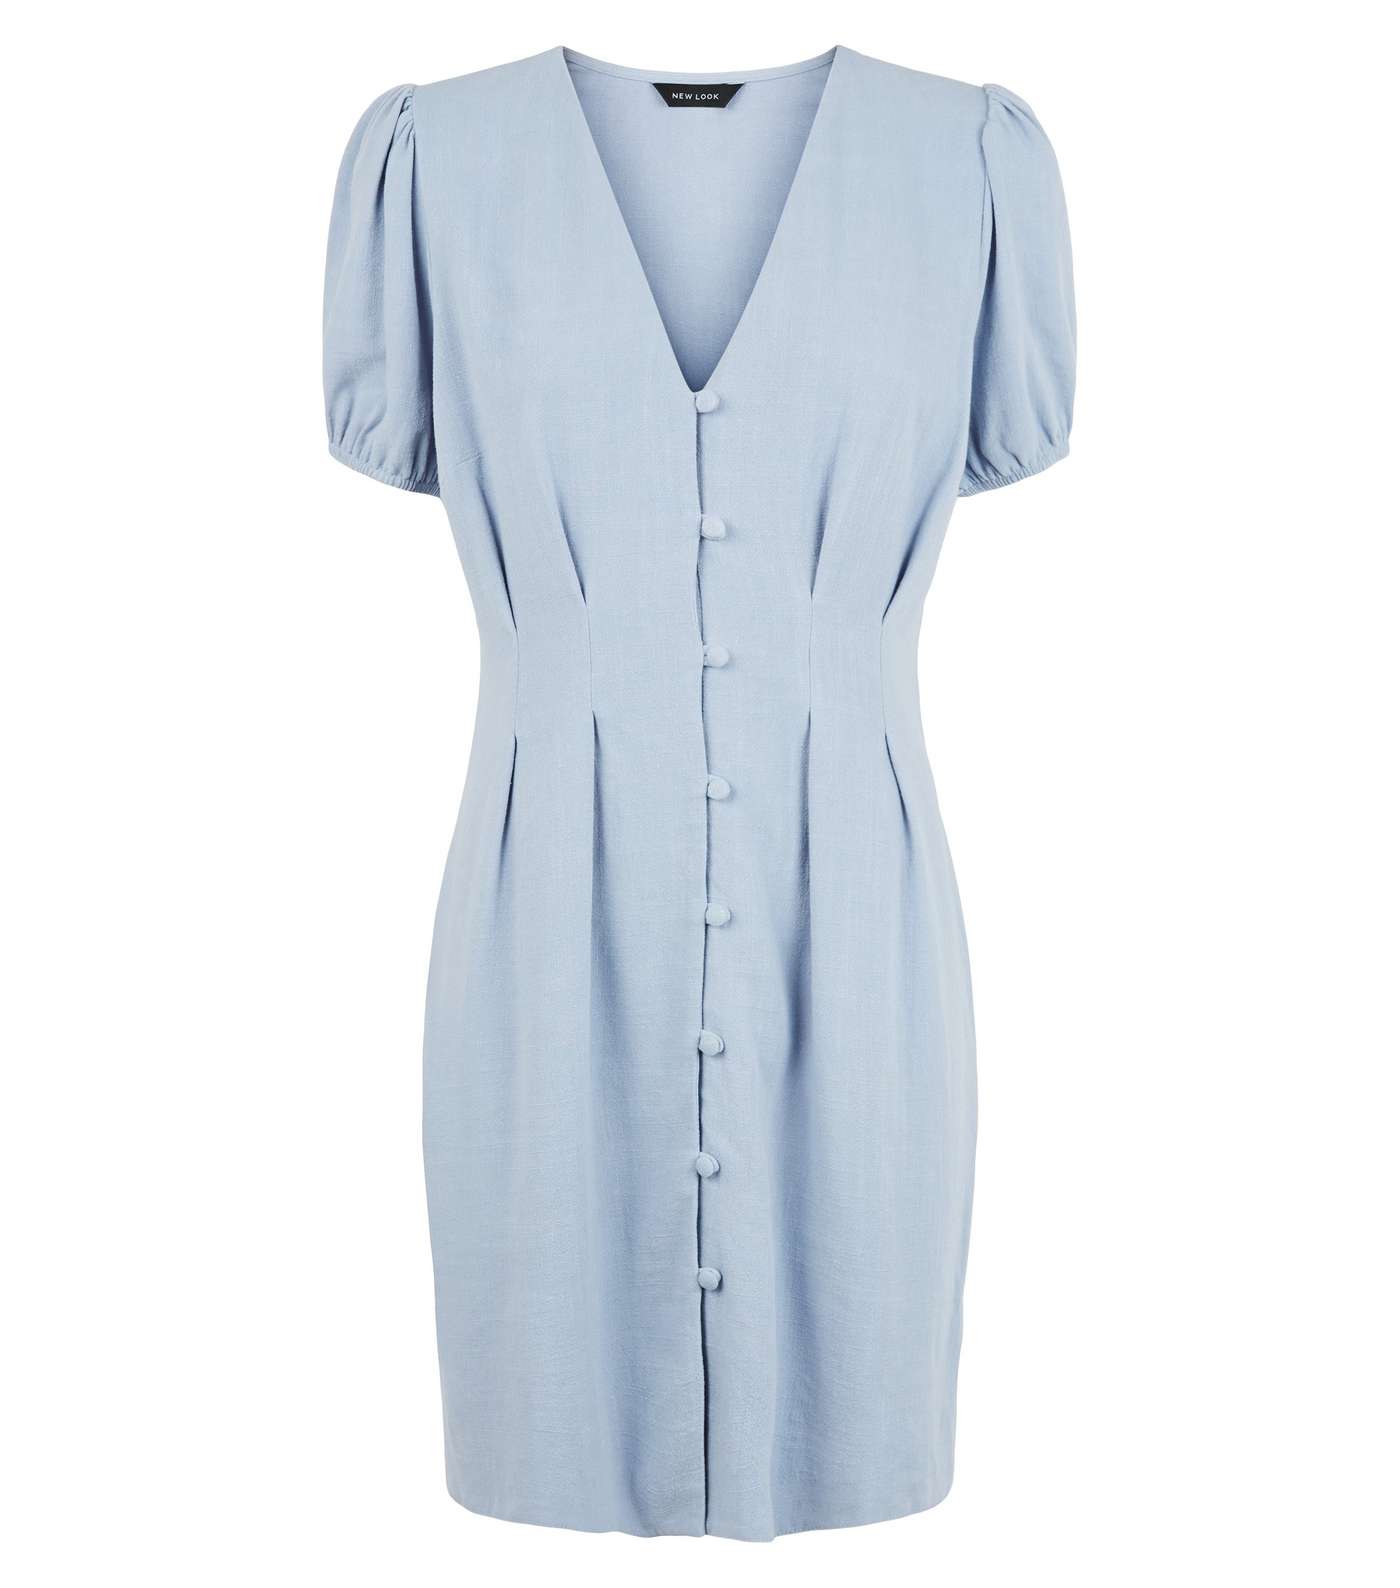 Blue Linen-Look Button Up Tea Dress Image 4